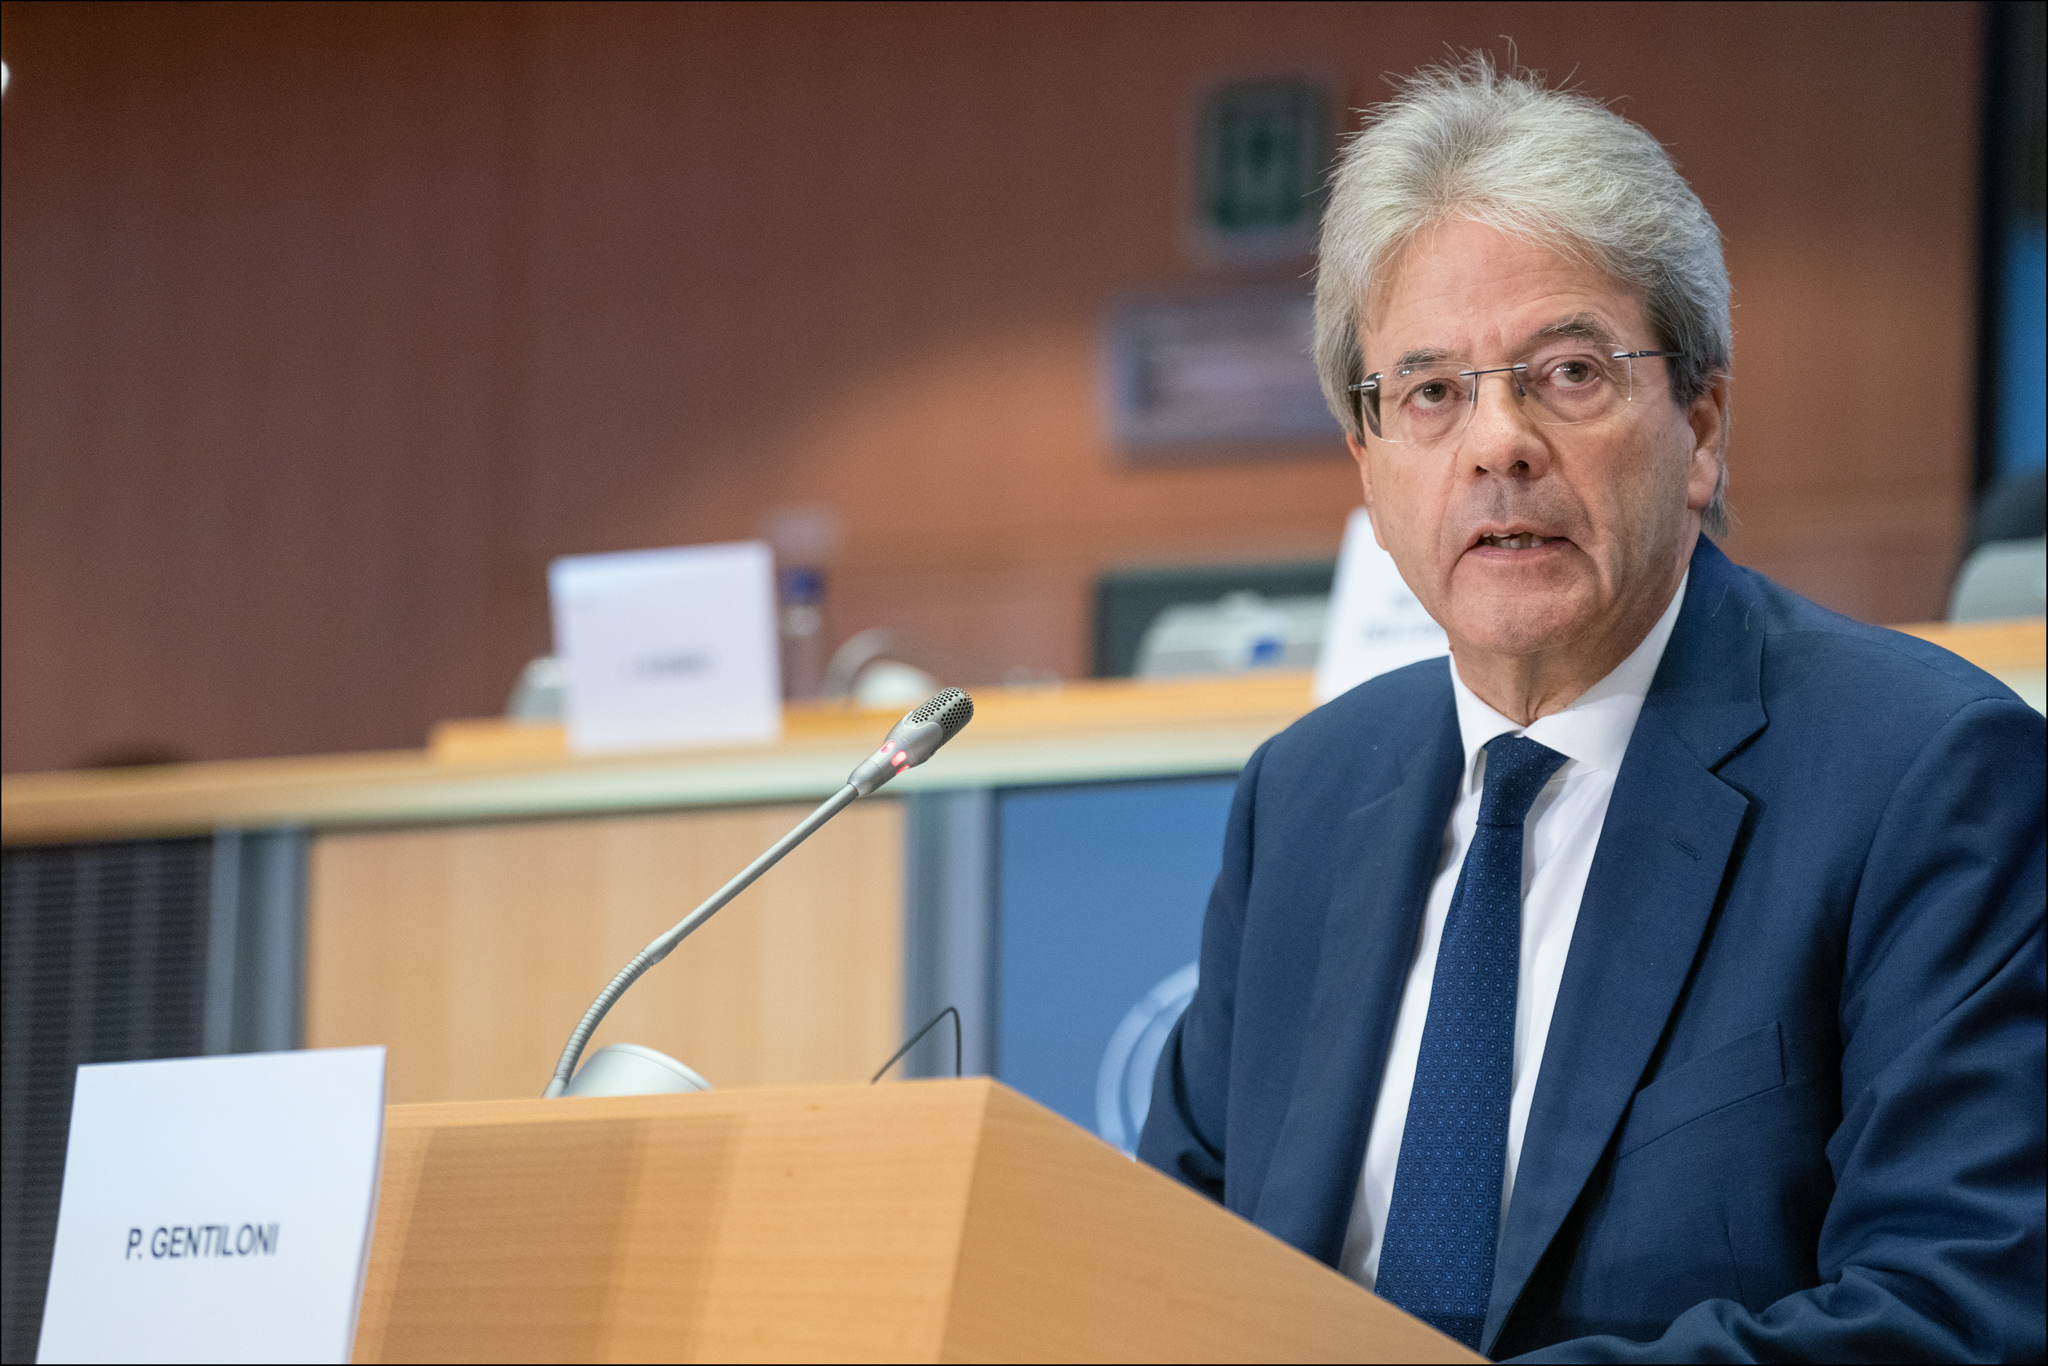 Π. Τζεντιλόνι για Eurogroup: «Υιοθετήσαμε ένα άνευ προηγουμένου πακέτο δημοσιονομικής πολιτικής»